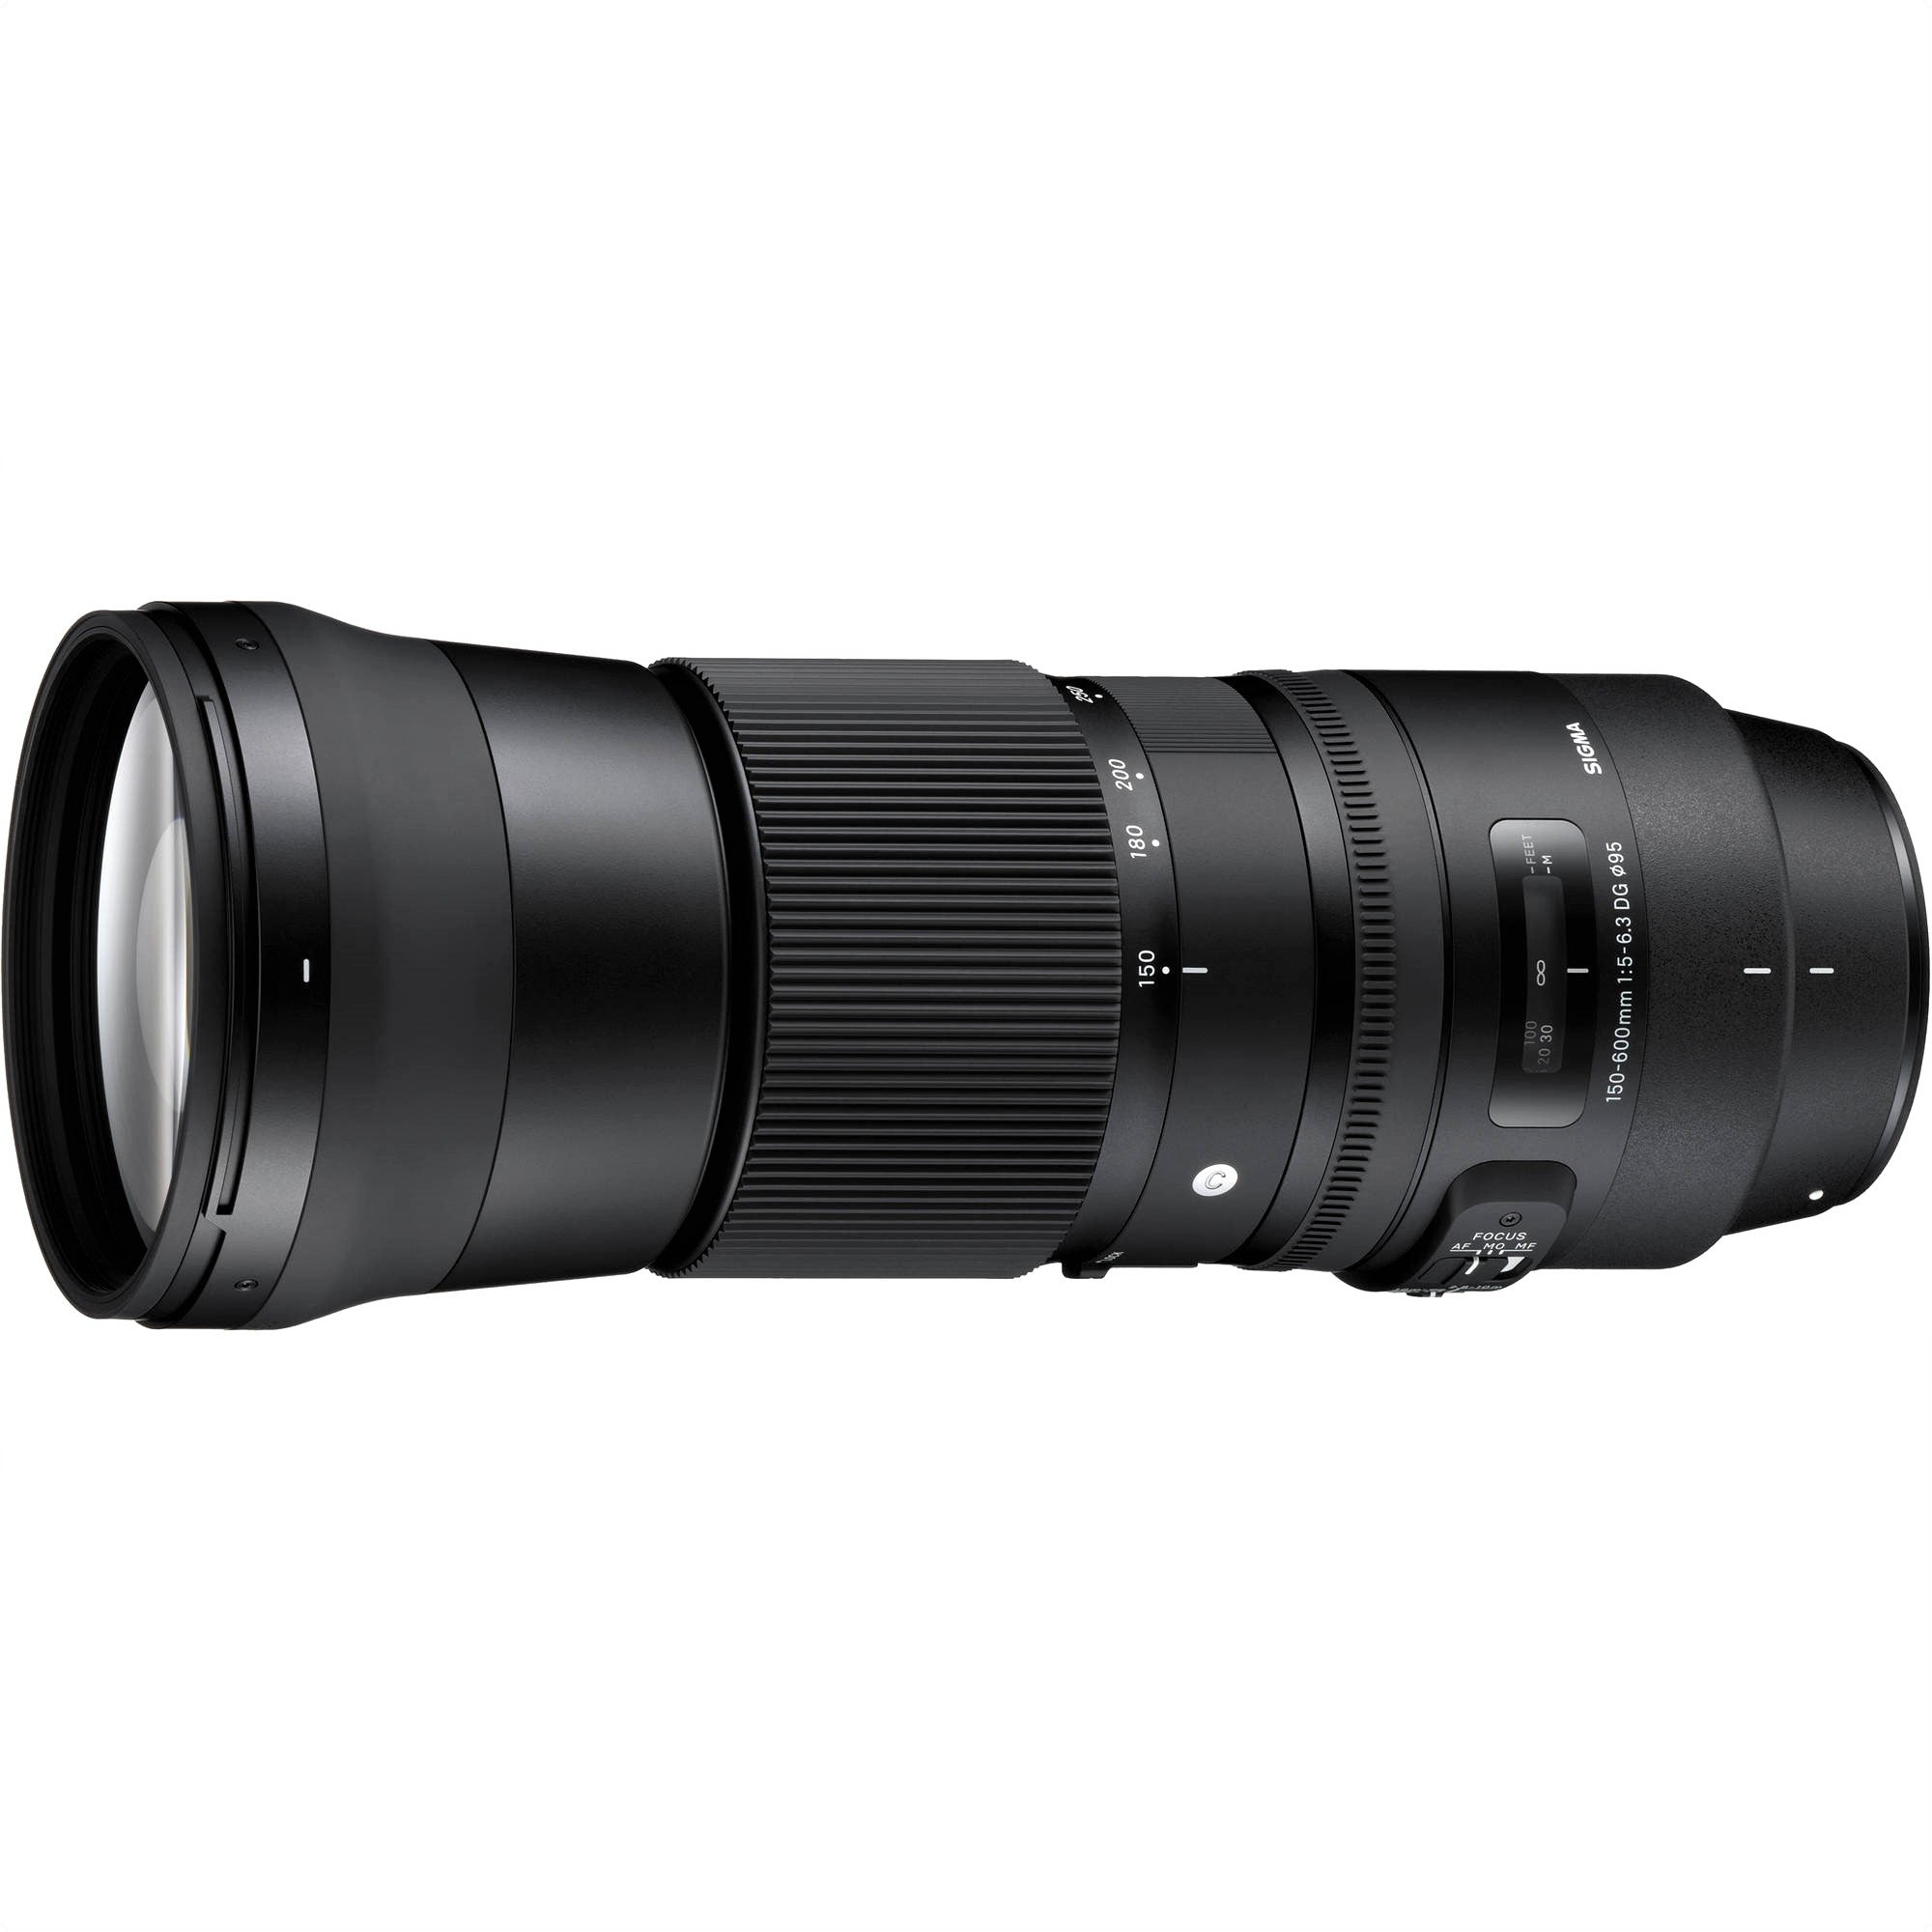 Sigma 150-600mm F5-6.3 DG OS HSM Contemporary Lens for Nikon F